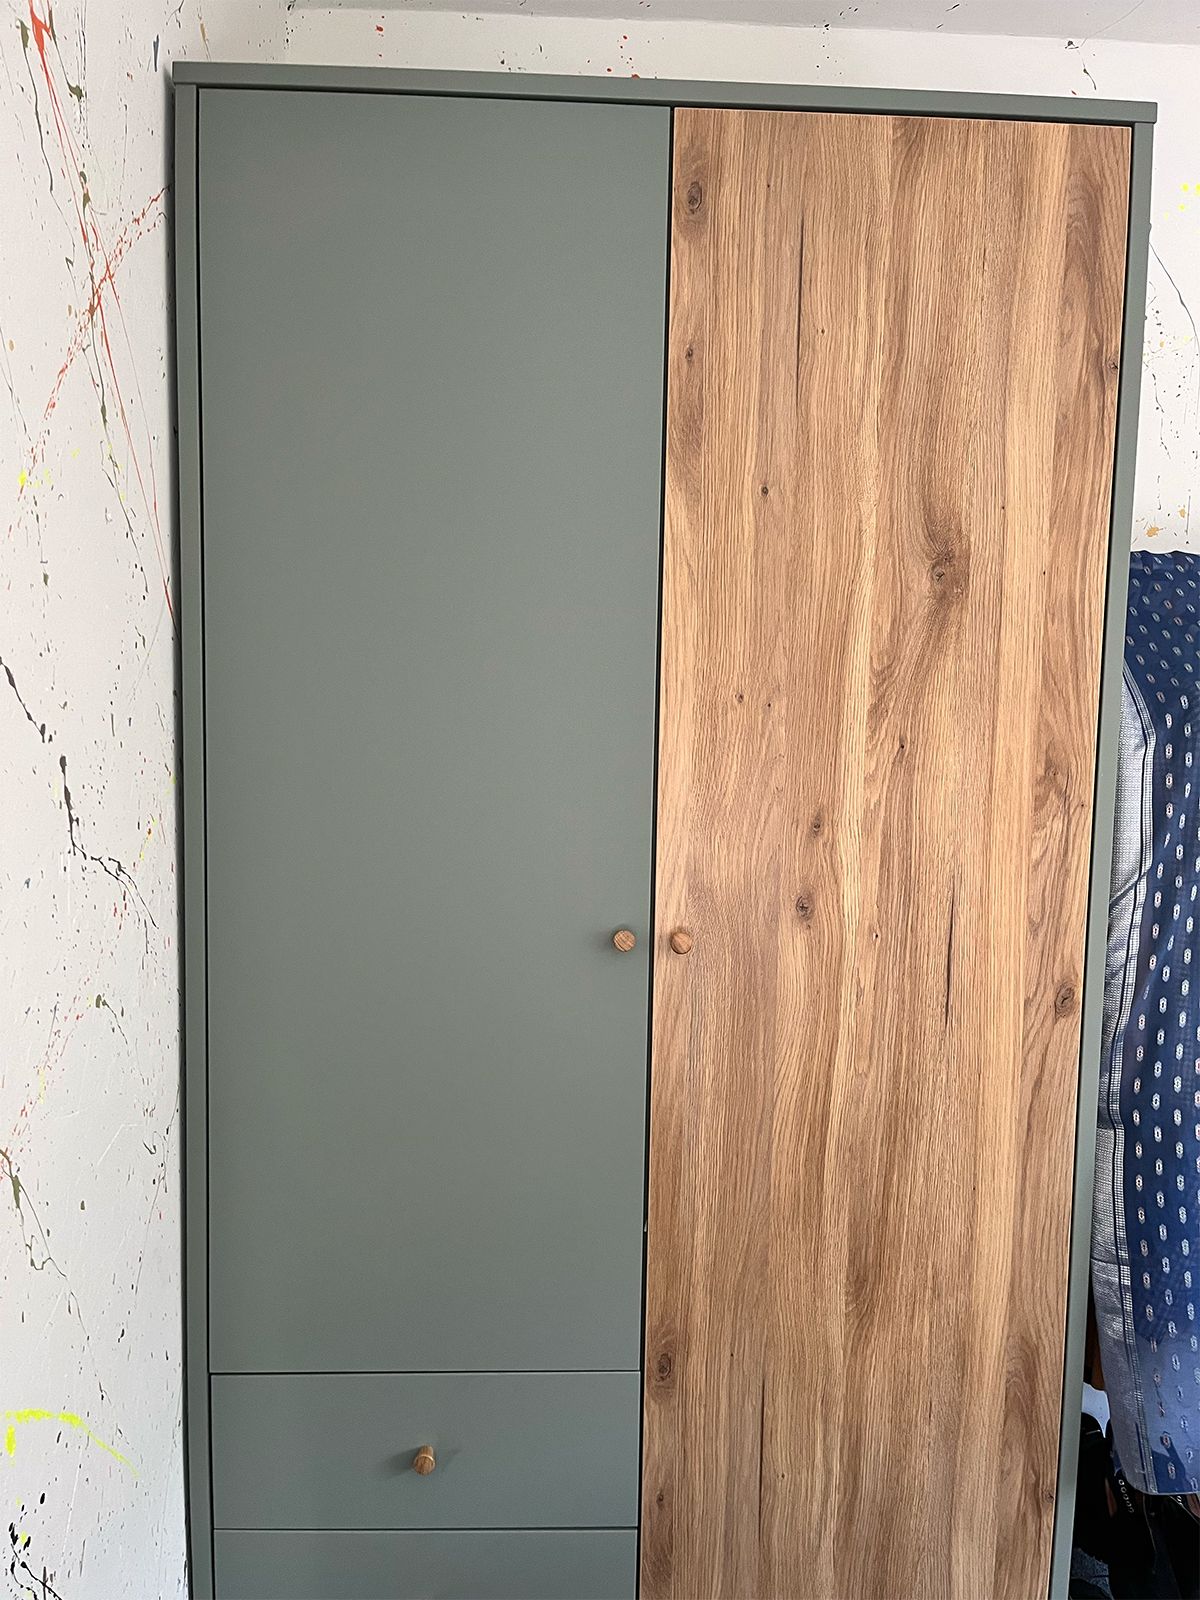 EasyKlix Harllson 2 Door Wardrobe with 2 Drawers, Green/Oak